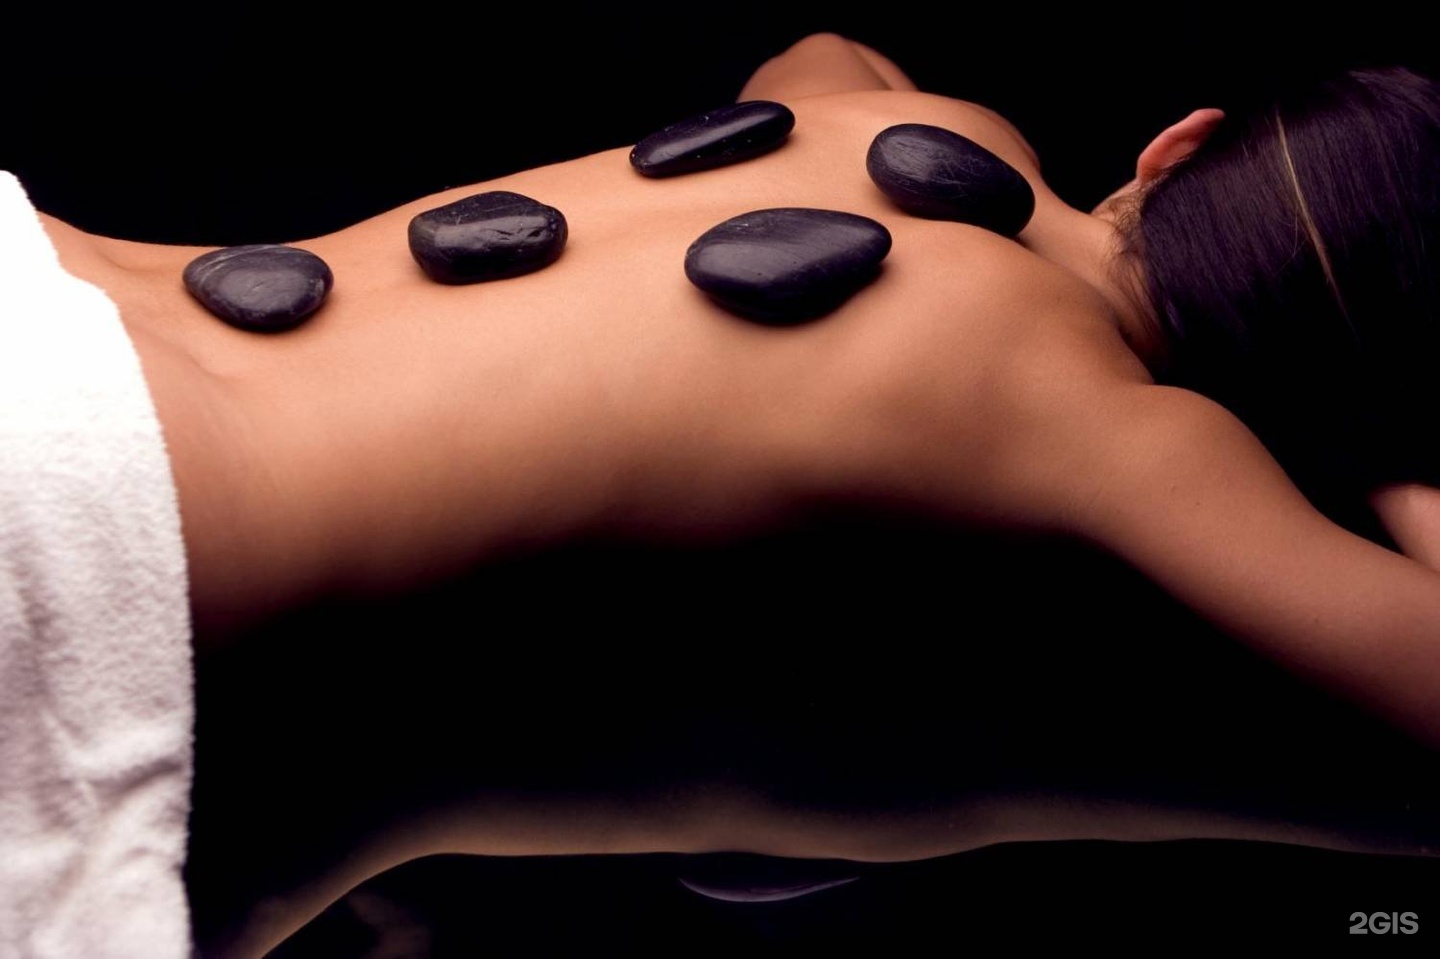 Massage up. Стоунтерапия горячими камнями. Камни для массажа спины. Массаж камнями. Стоунтерапия массаж горячими камнями.